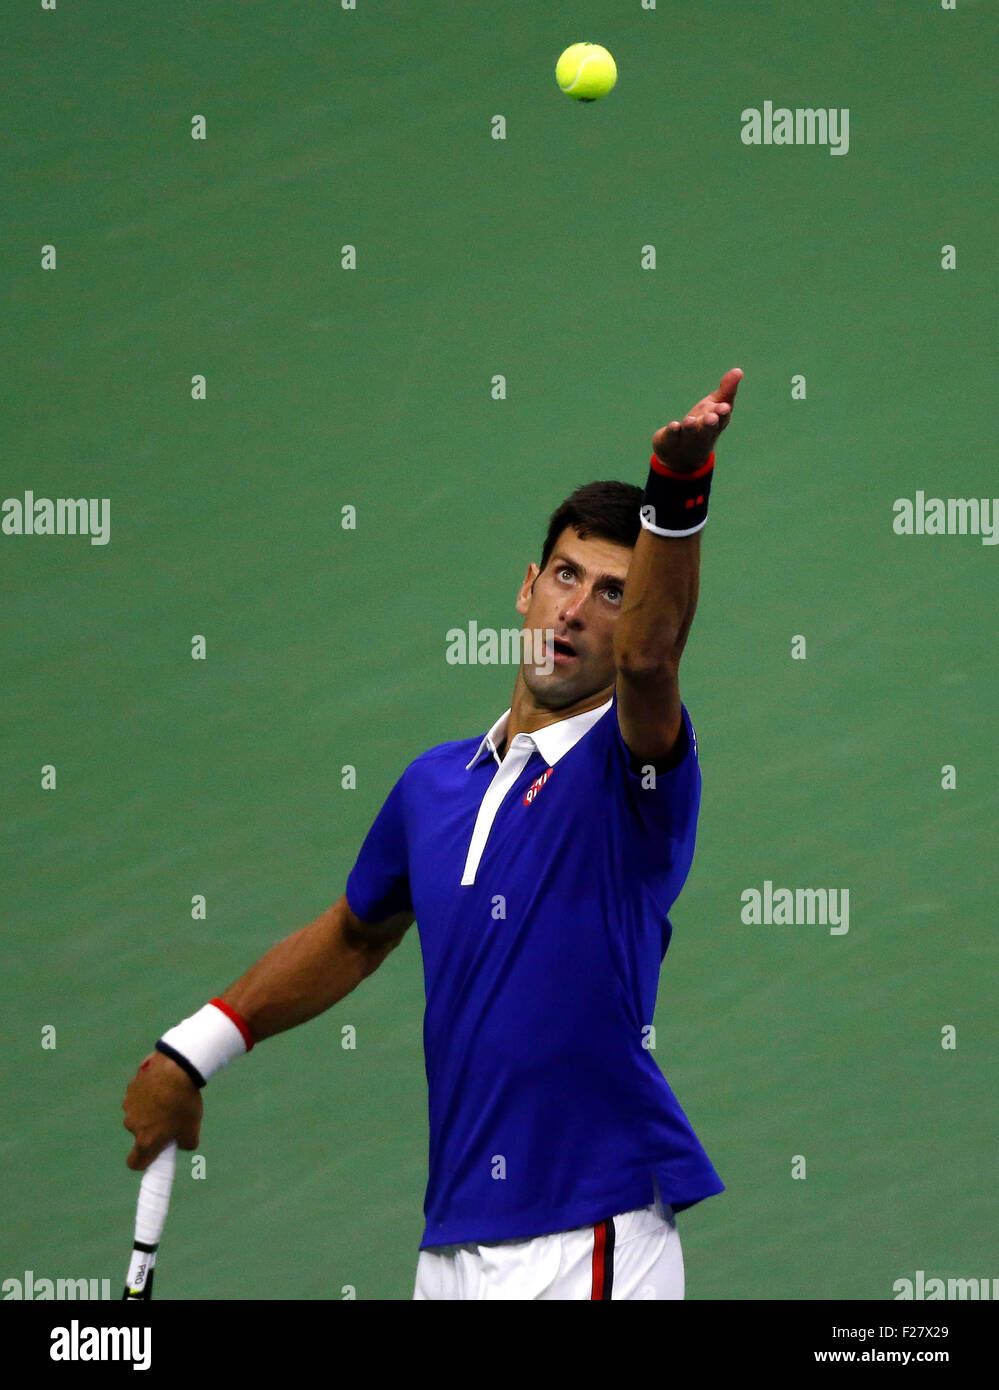 New York, USA. 13. Sep, 2015. Novak Djokovic Serbien dient dazu, Roger Federer der Schweiz während ihrer Herren Einzel Finale bei den 2015 US Open in New York, Vereinigte Staaten, am 13. September 2015. Bildnachweis: Qin Lang/Xinhua/Alamy Live-Nachrichten Stockfoto